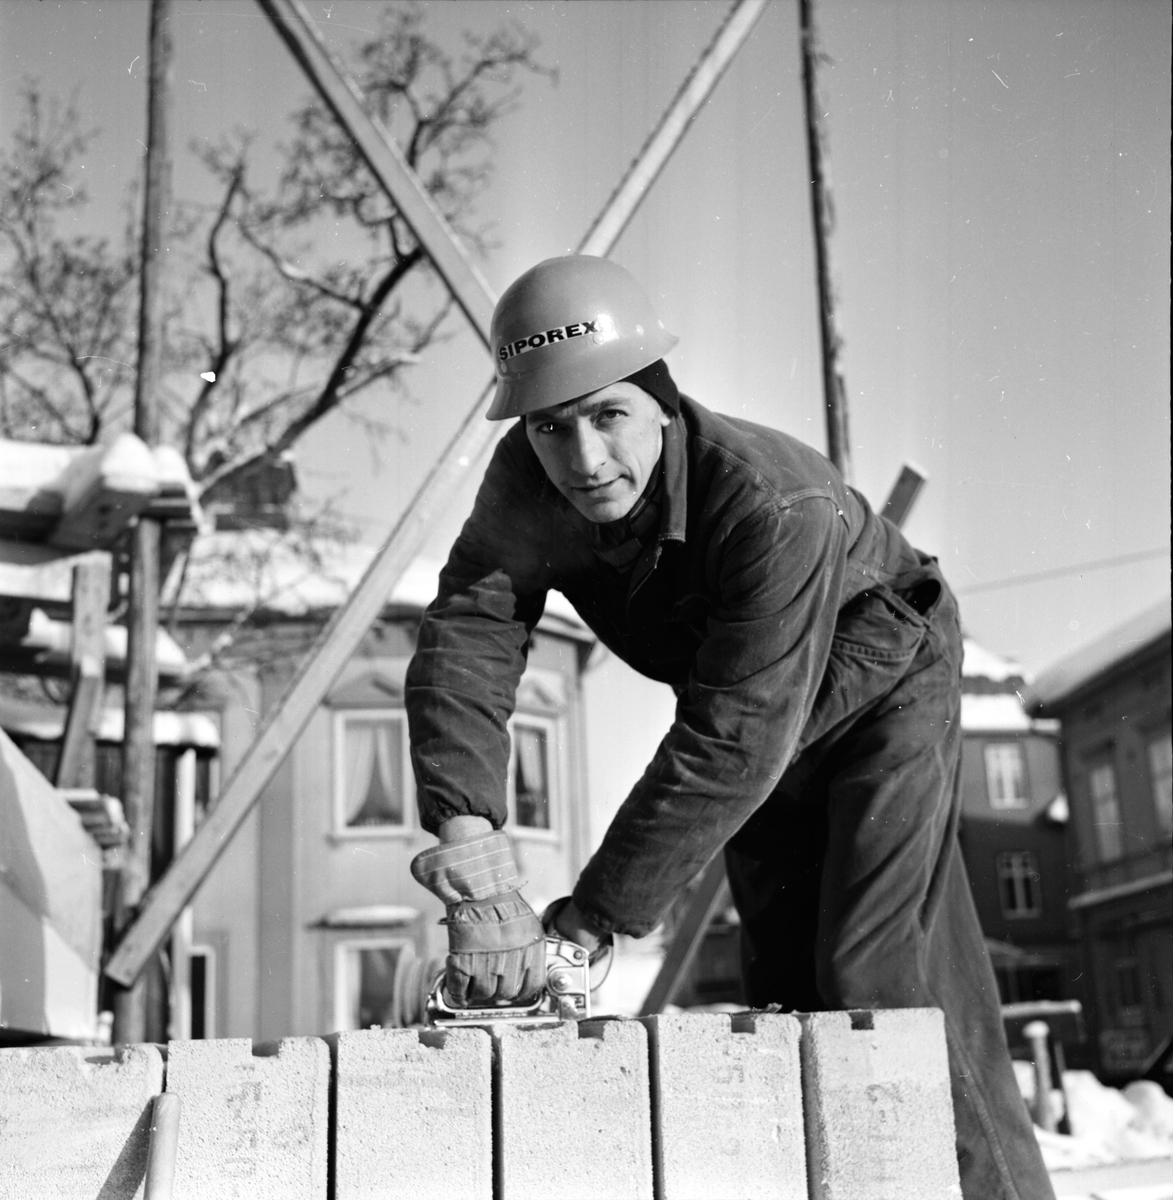 Kyliga arbetsplatser,
19 Jan 1966
Byggarbetare hanterar Siporexblock.